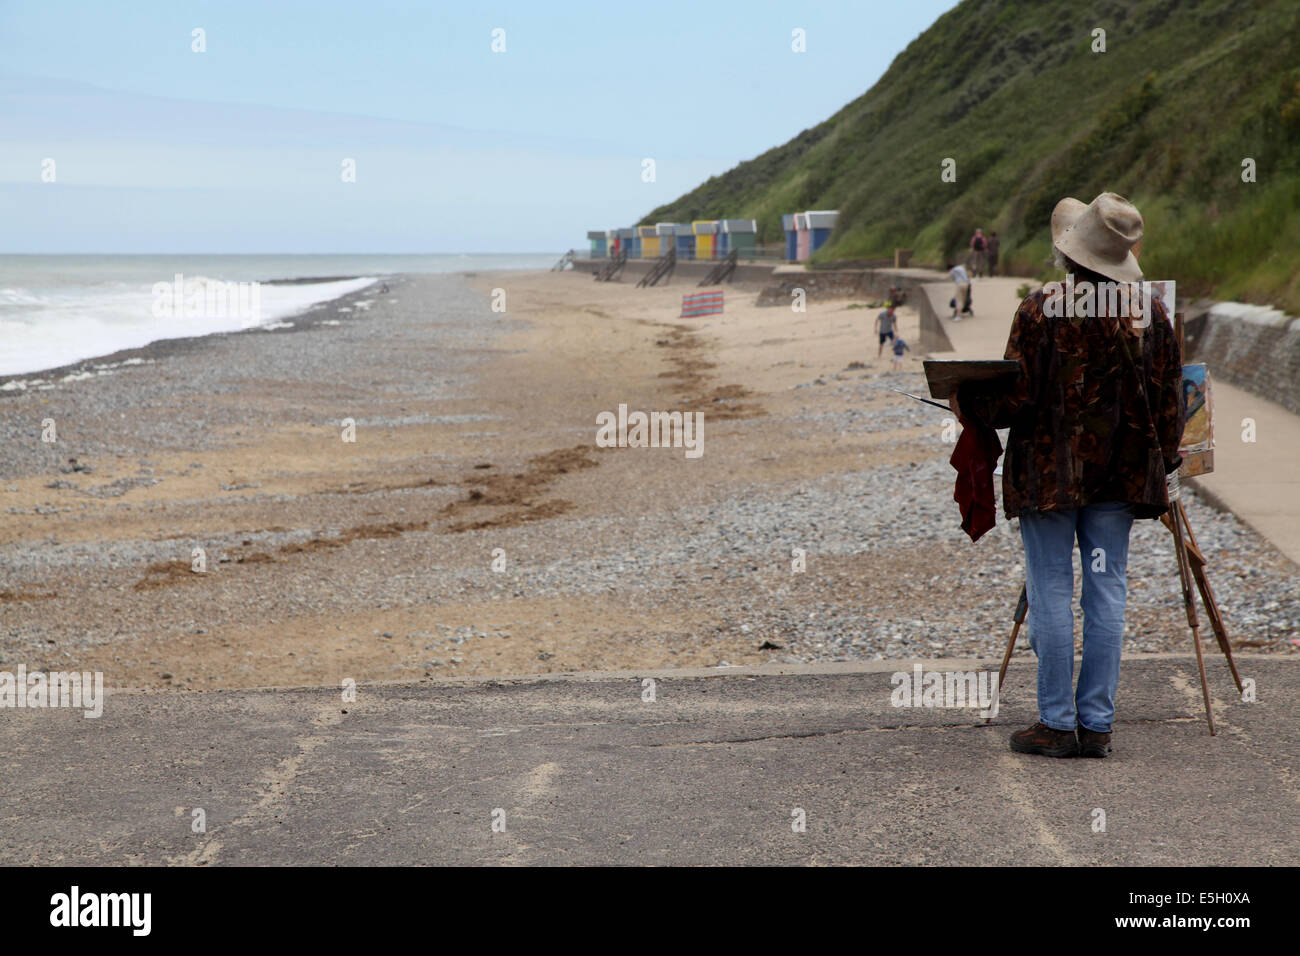 Un solitario pintor con su caballete considera su sujeto, la playa y la costa de Norfolk Foto de stock